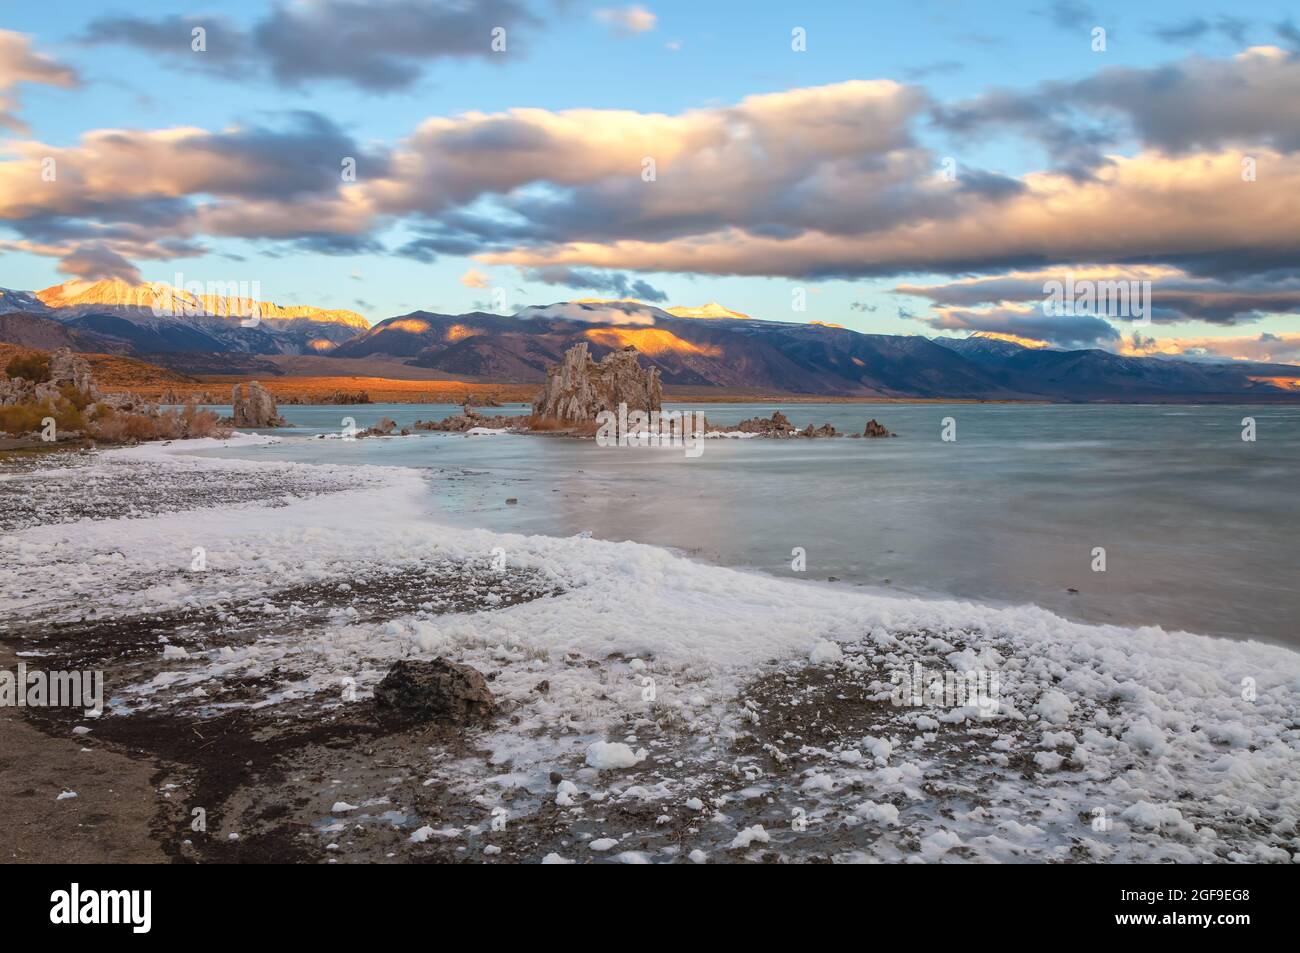 Las espumas blancas se forman a lo largo de la orilla del lago debido al viento en una mañana otoñal en Mono Lake, California, Estados Unidos. Foto de stock